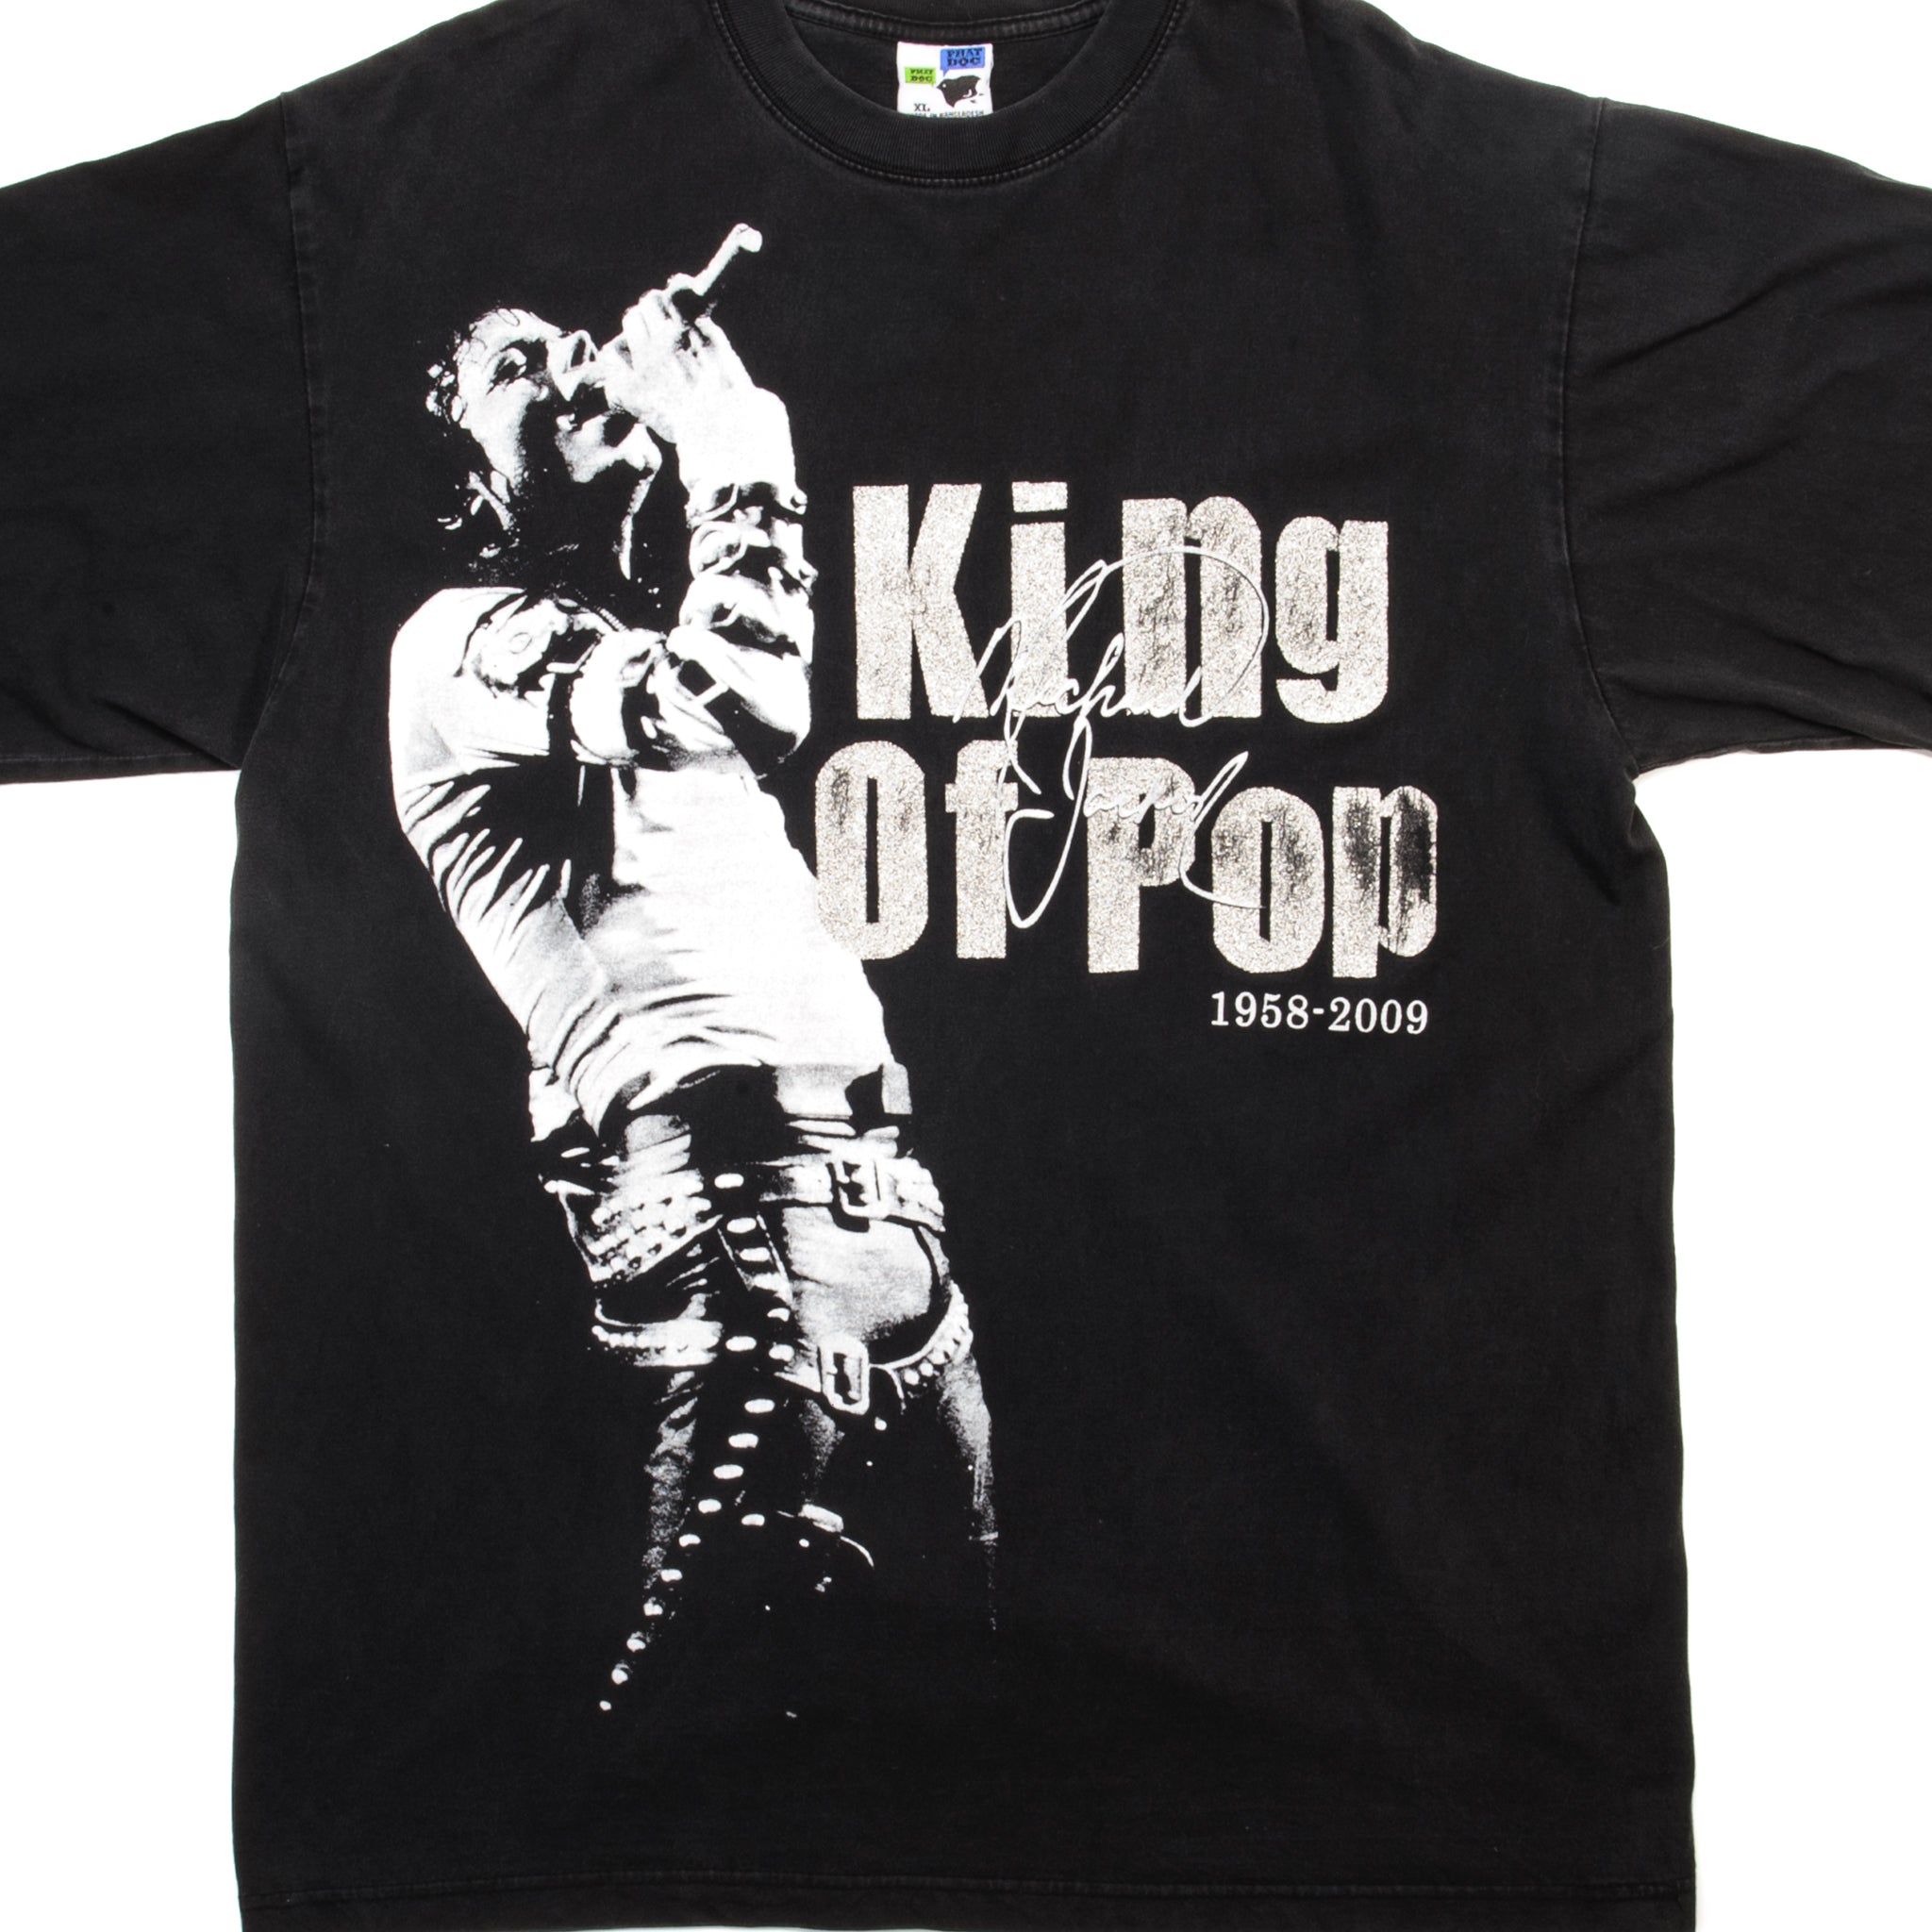 MICHAEL JACKSON DANGEROUS ALBUM KING OF POP MEN'S SIZES BLACK T SHIRTS